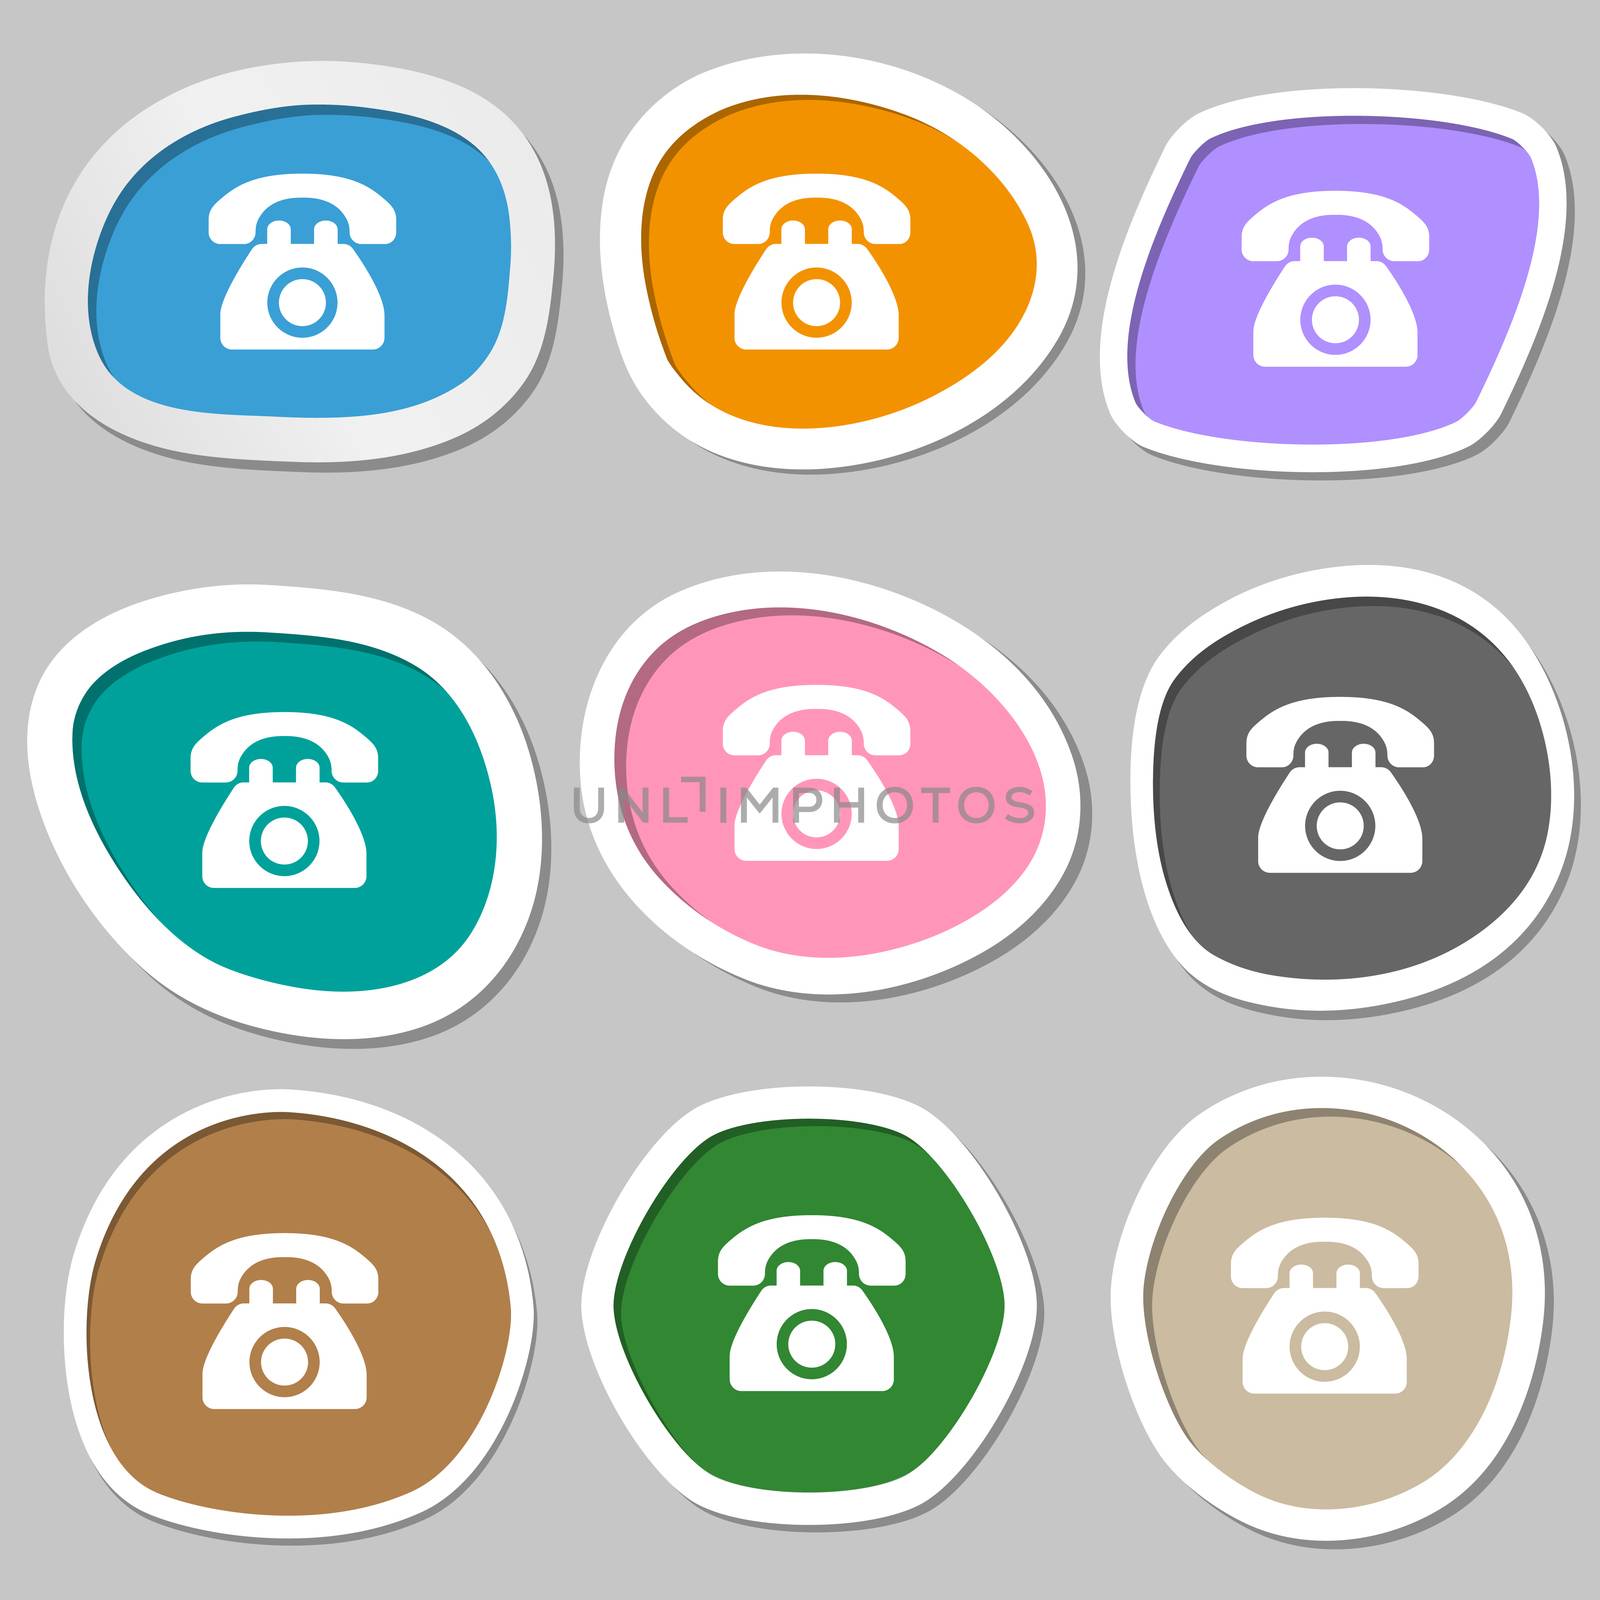 Retro telephone icon symbols. Multicolored paper stickers. illustration